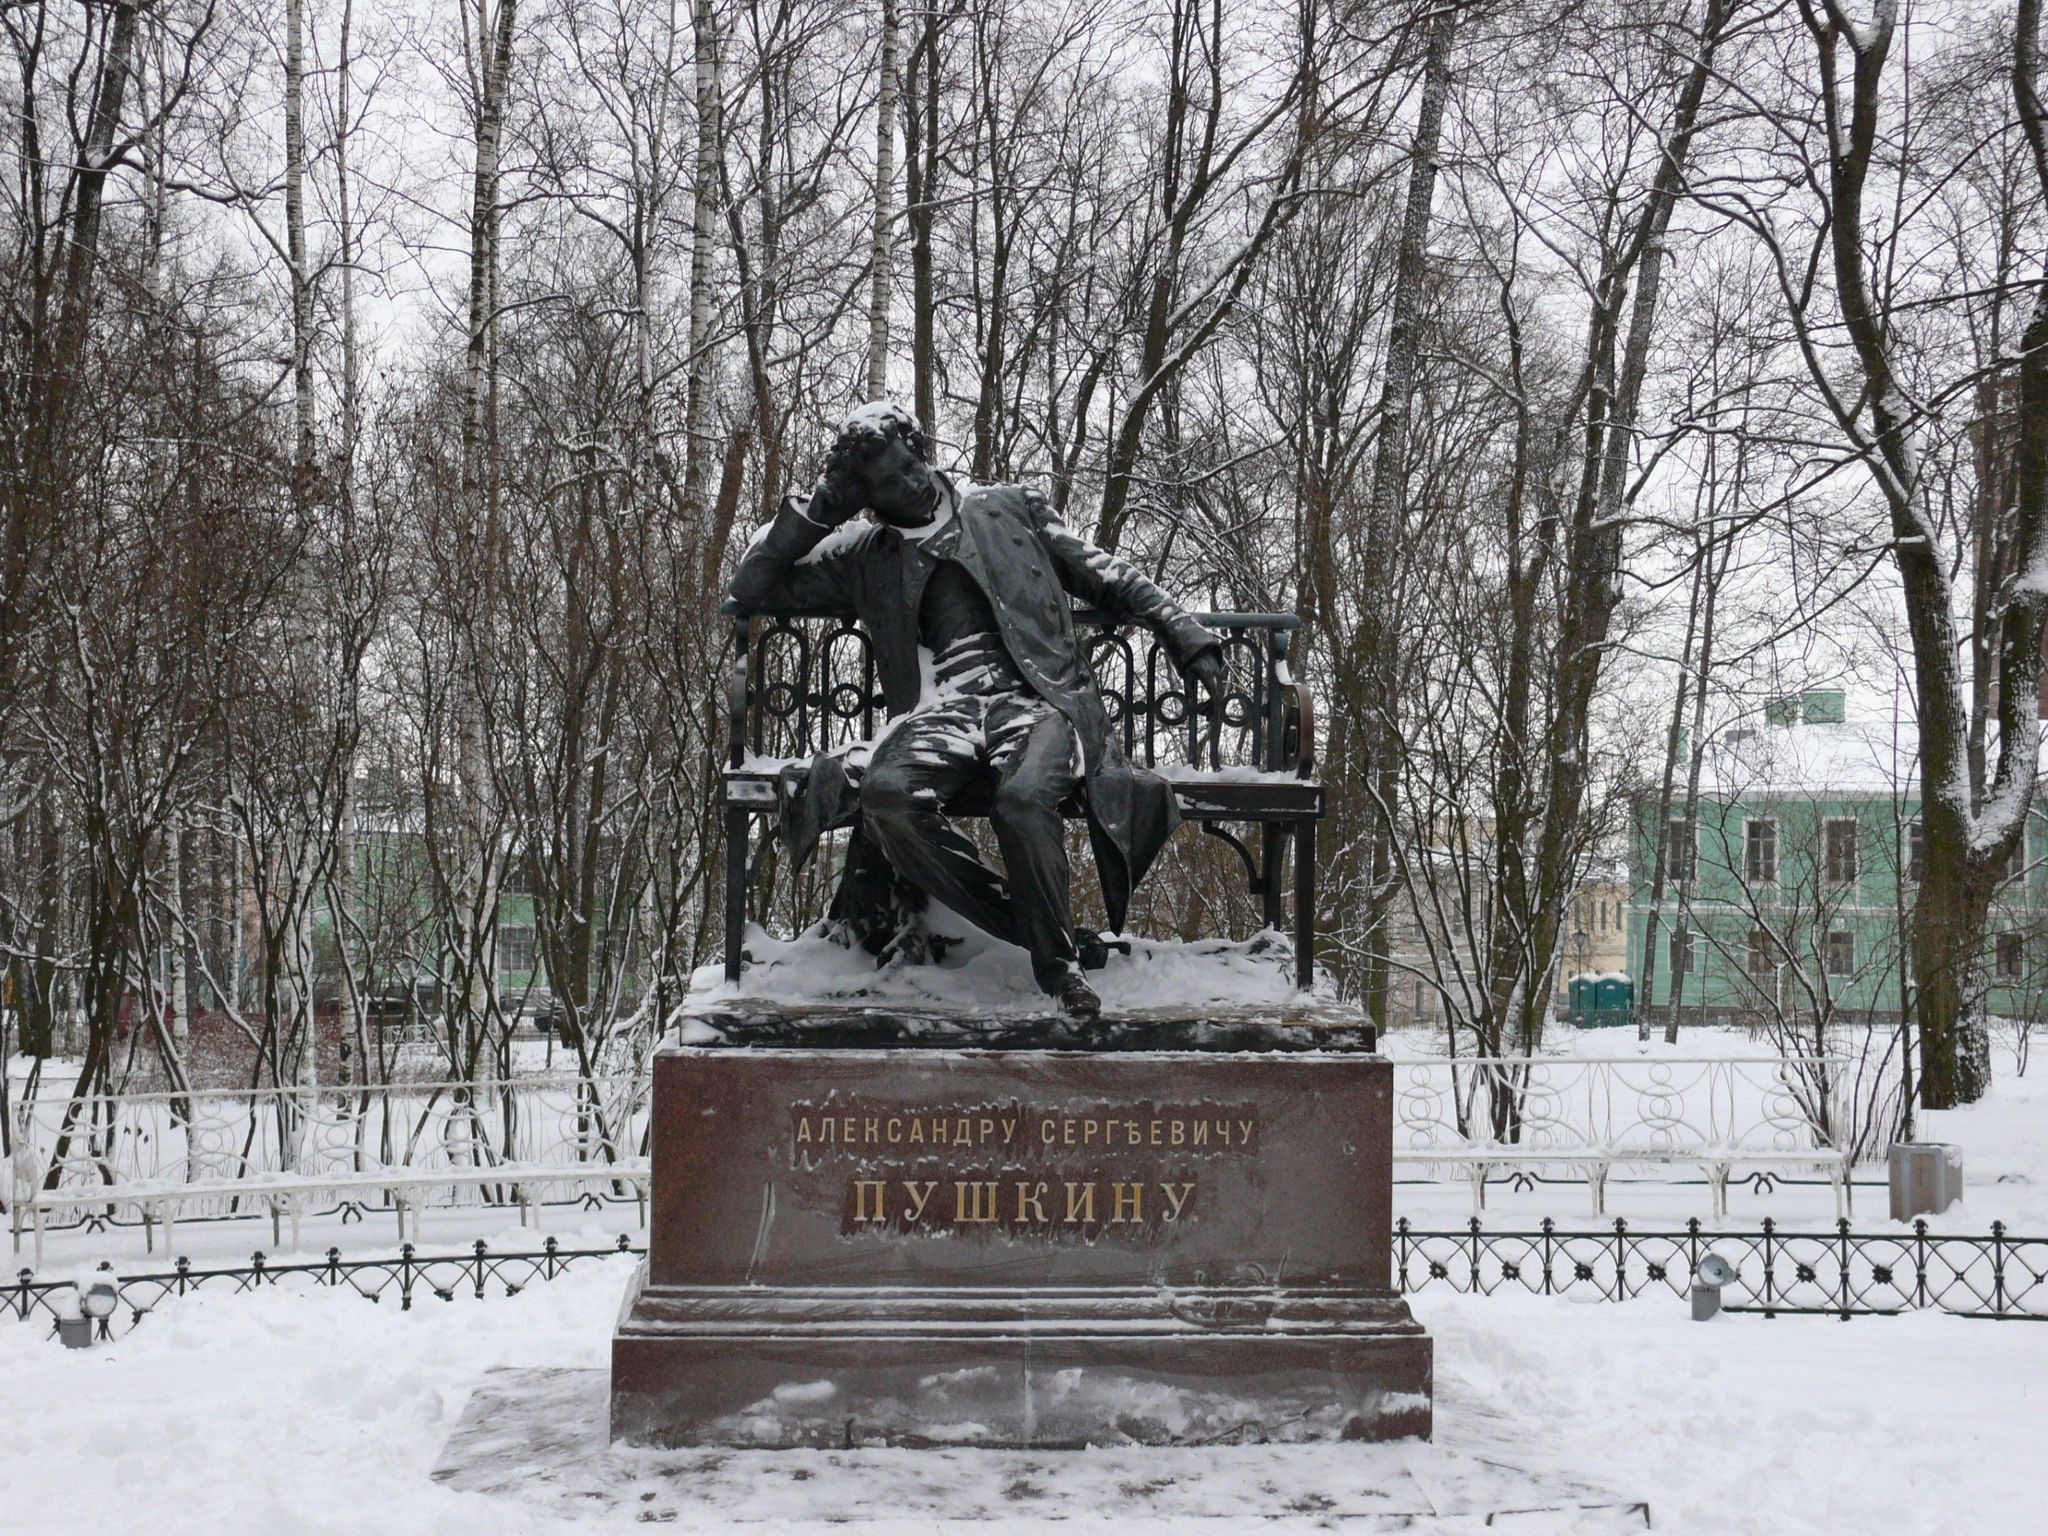 Памятник Пушкину в Царском селе зимой